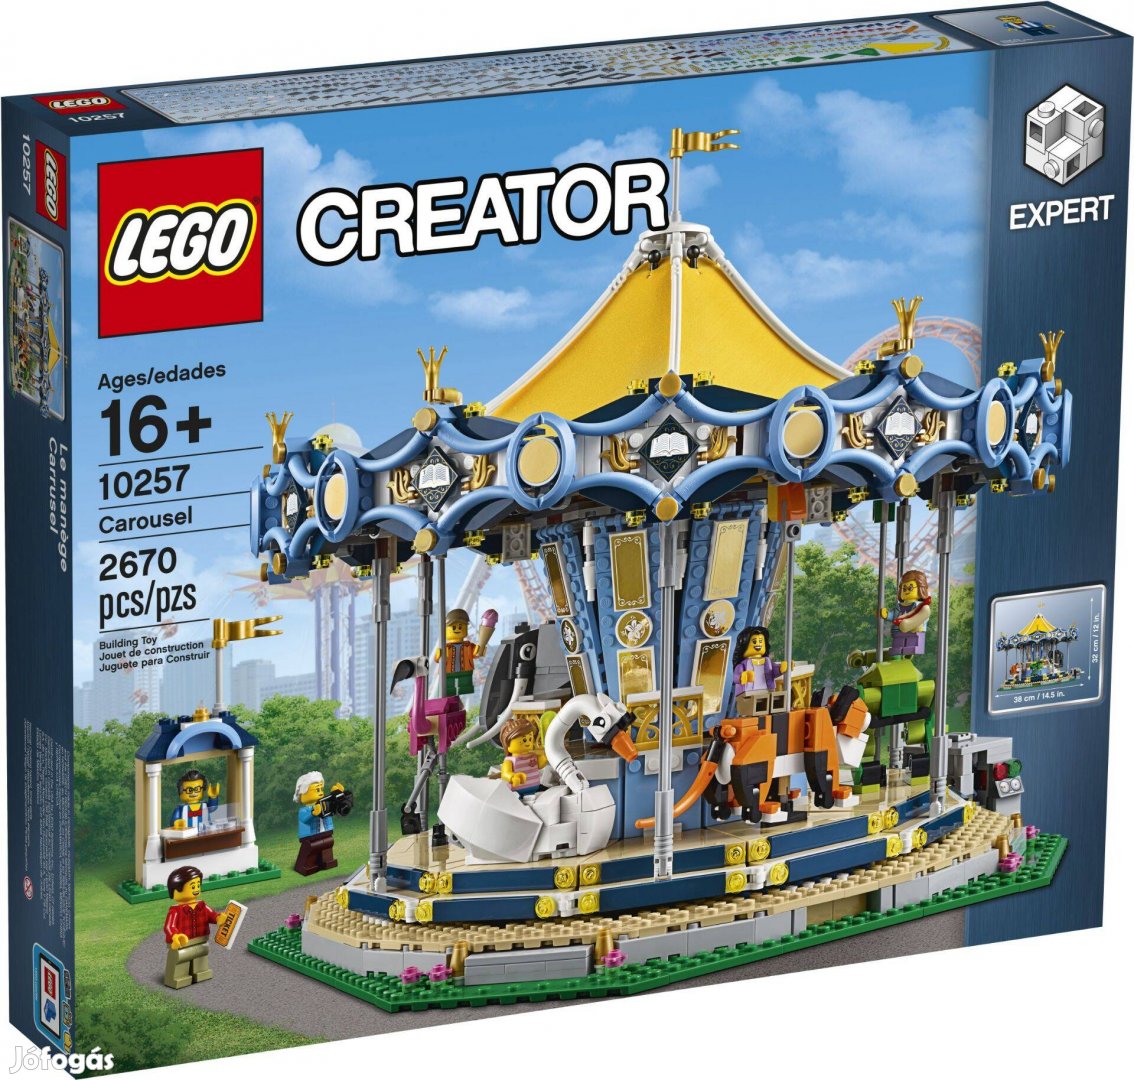 LEGO Creator Expert 10257 Carousel bontatlan, új